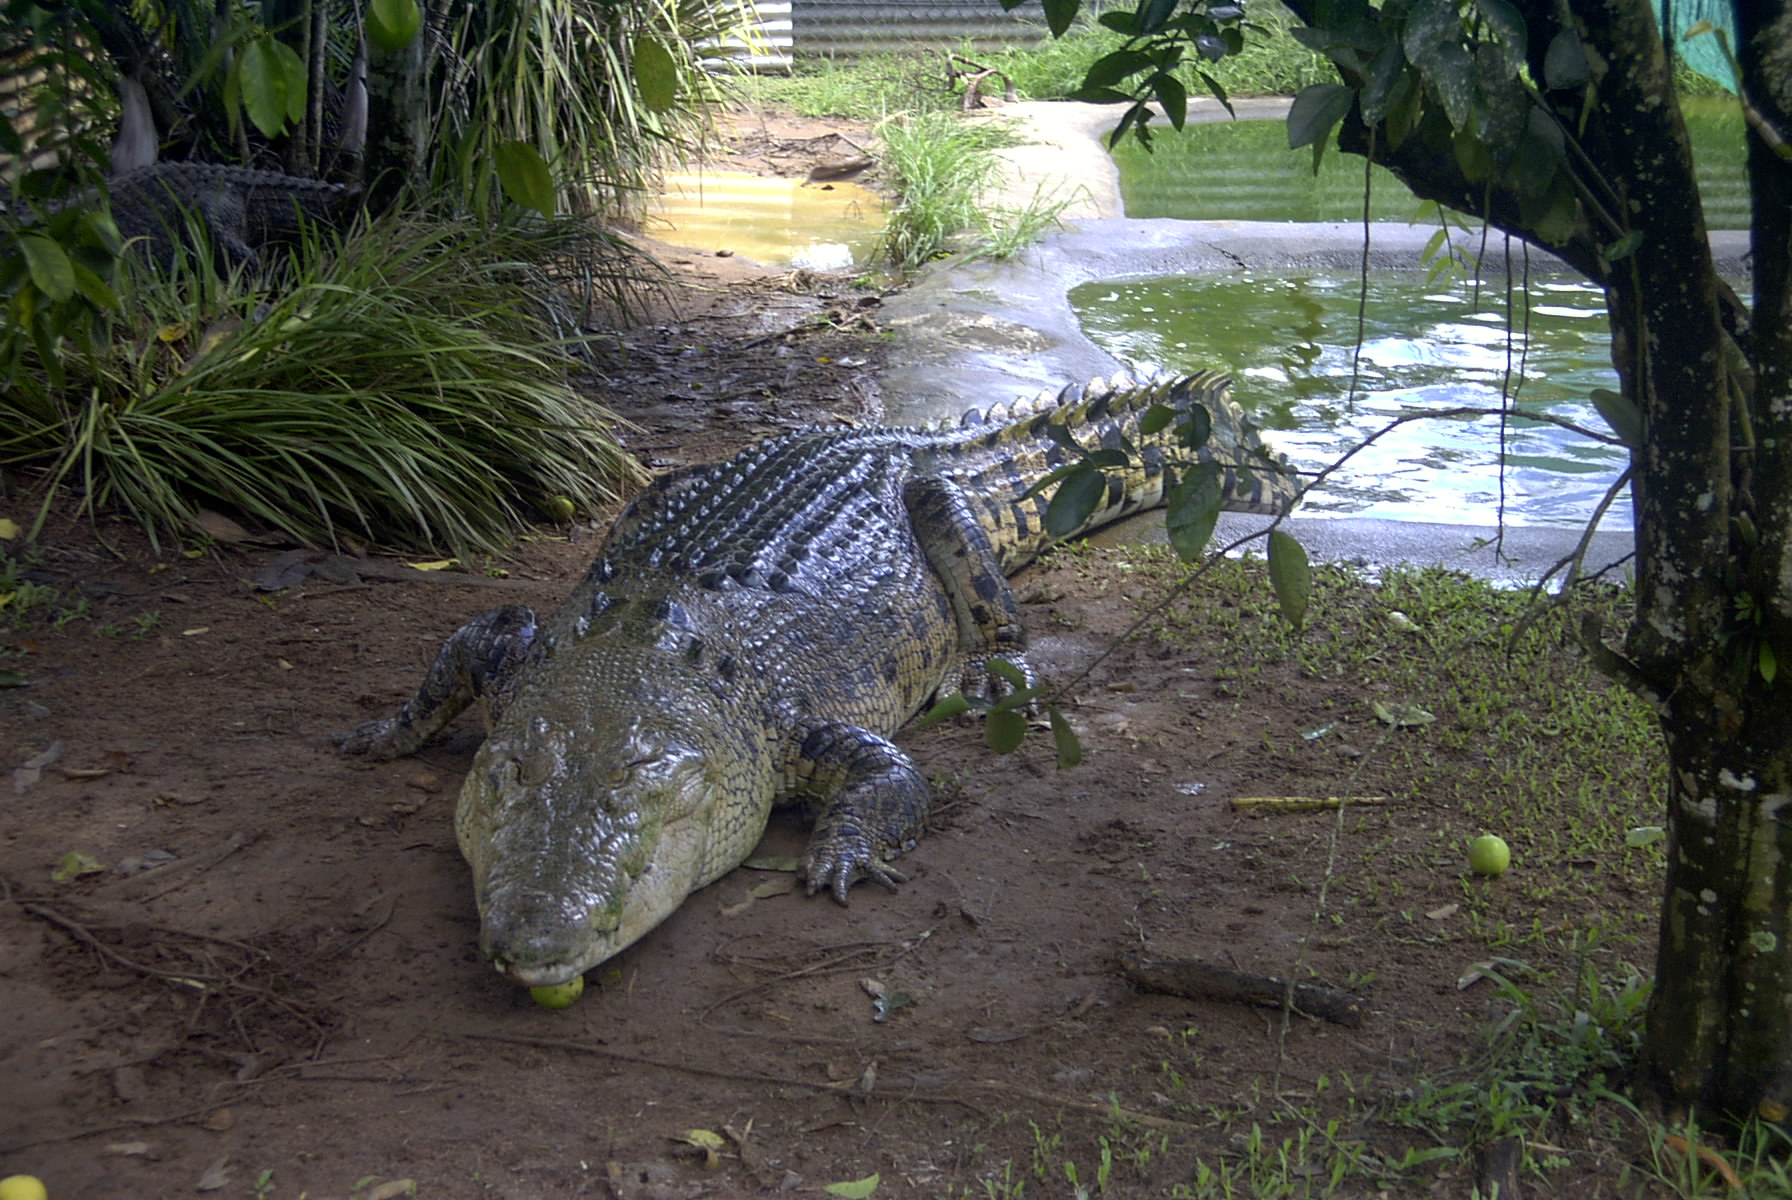 Crocodilopolis a világ legrégibb városa